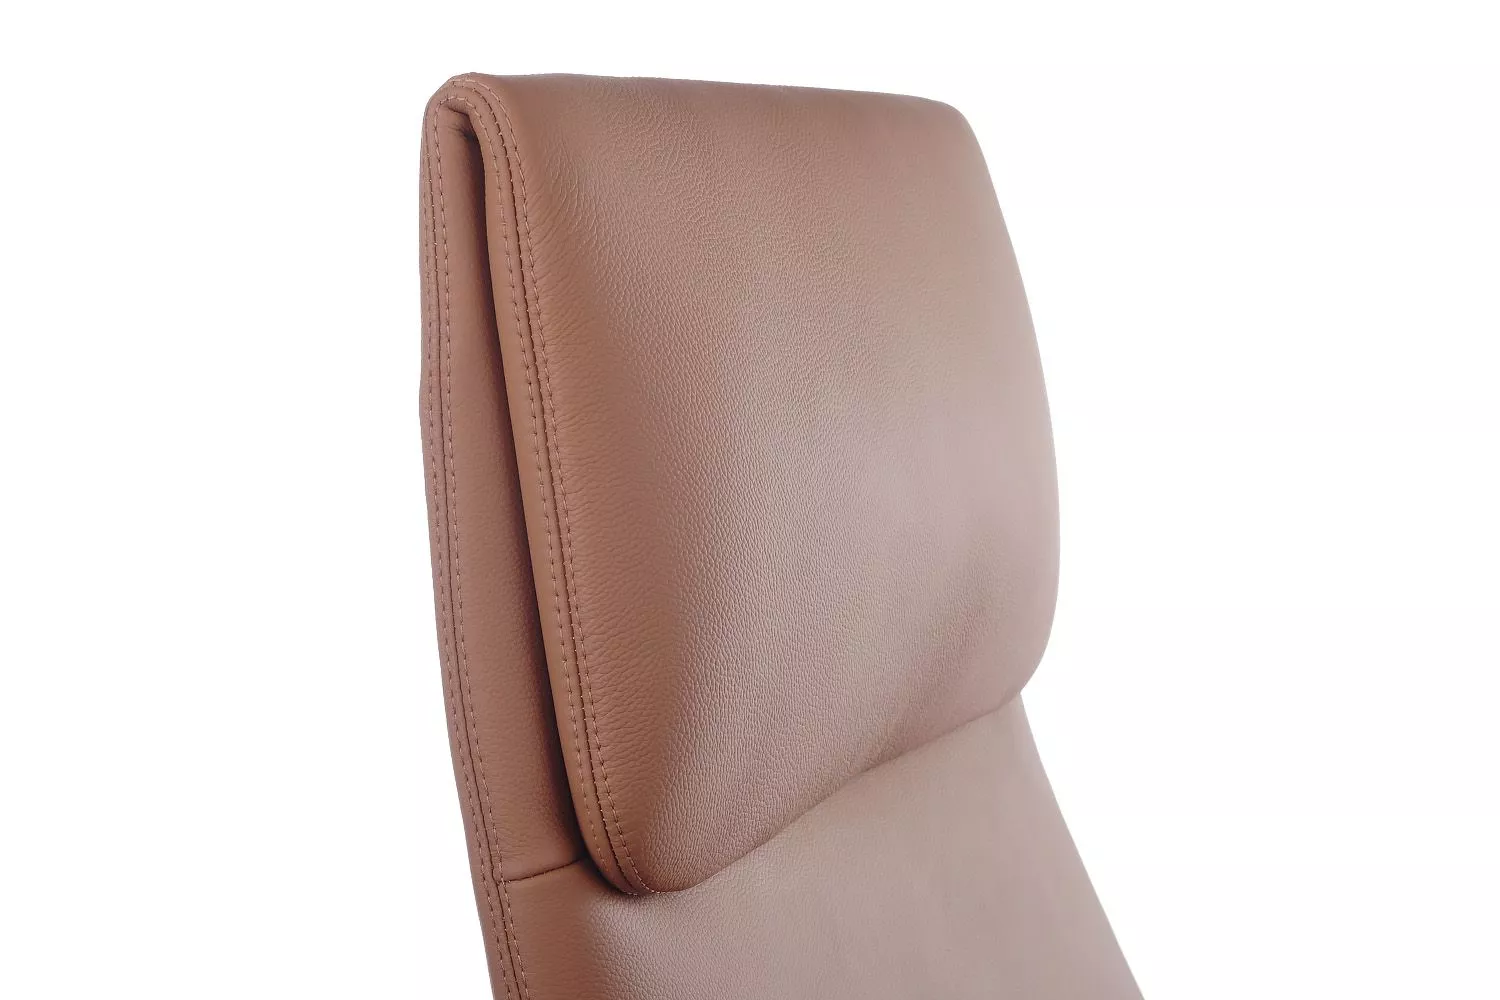 Кресло RIVA DESIGN Aura (FK005-A) светло-коричневый